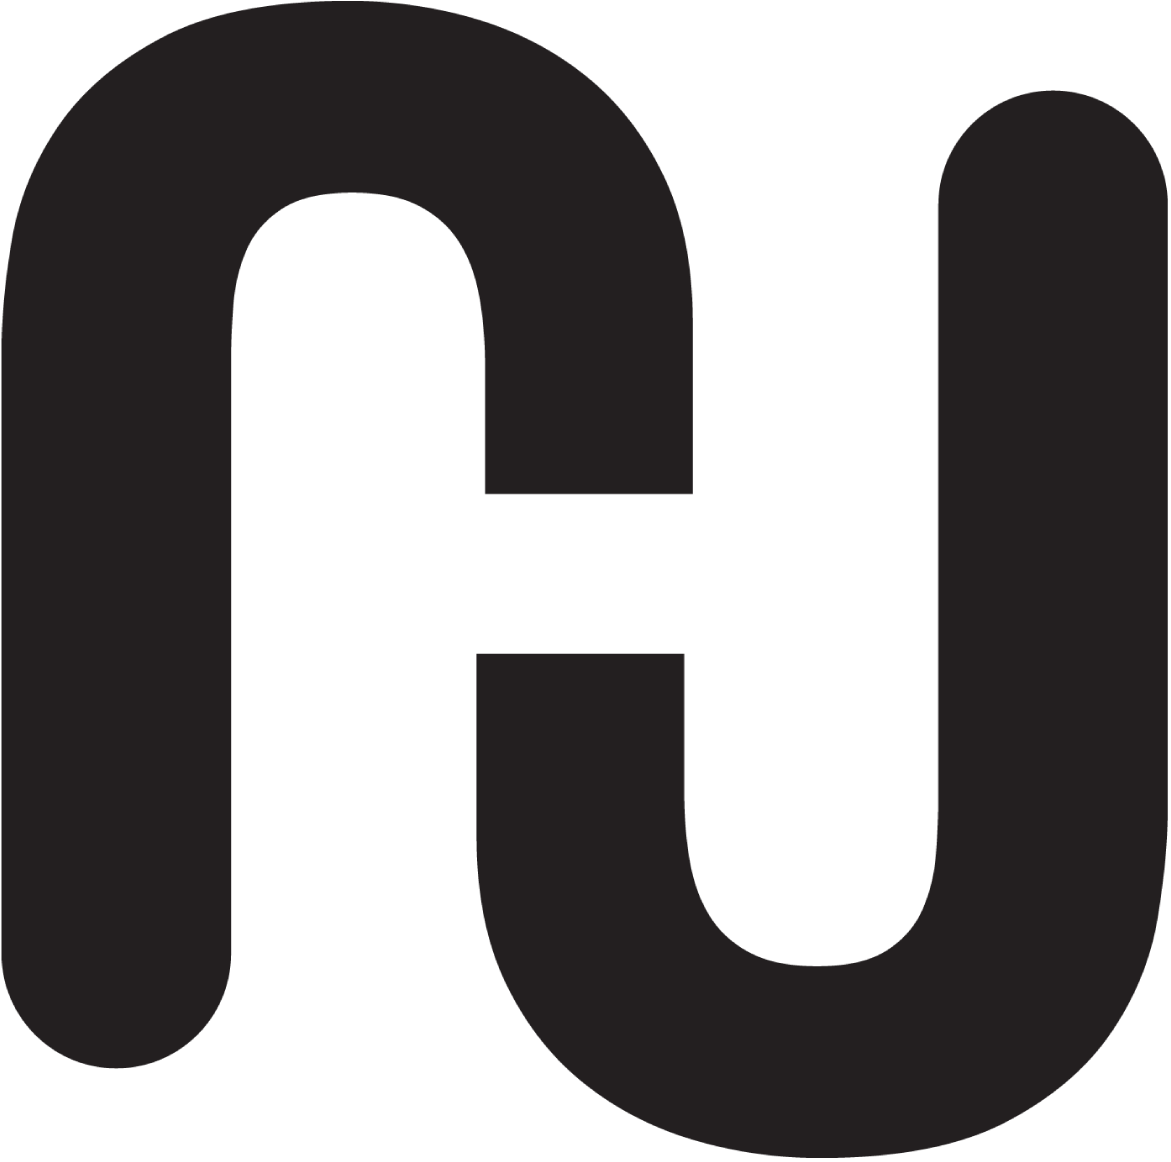  Jaime logo